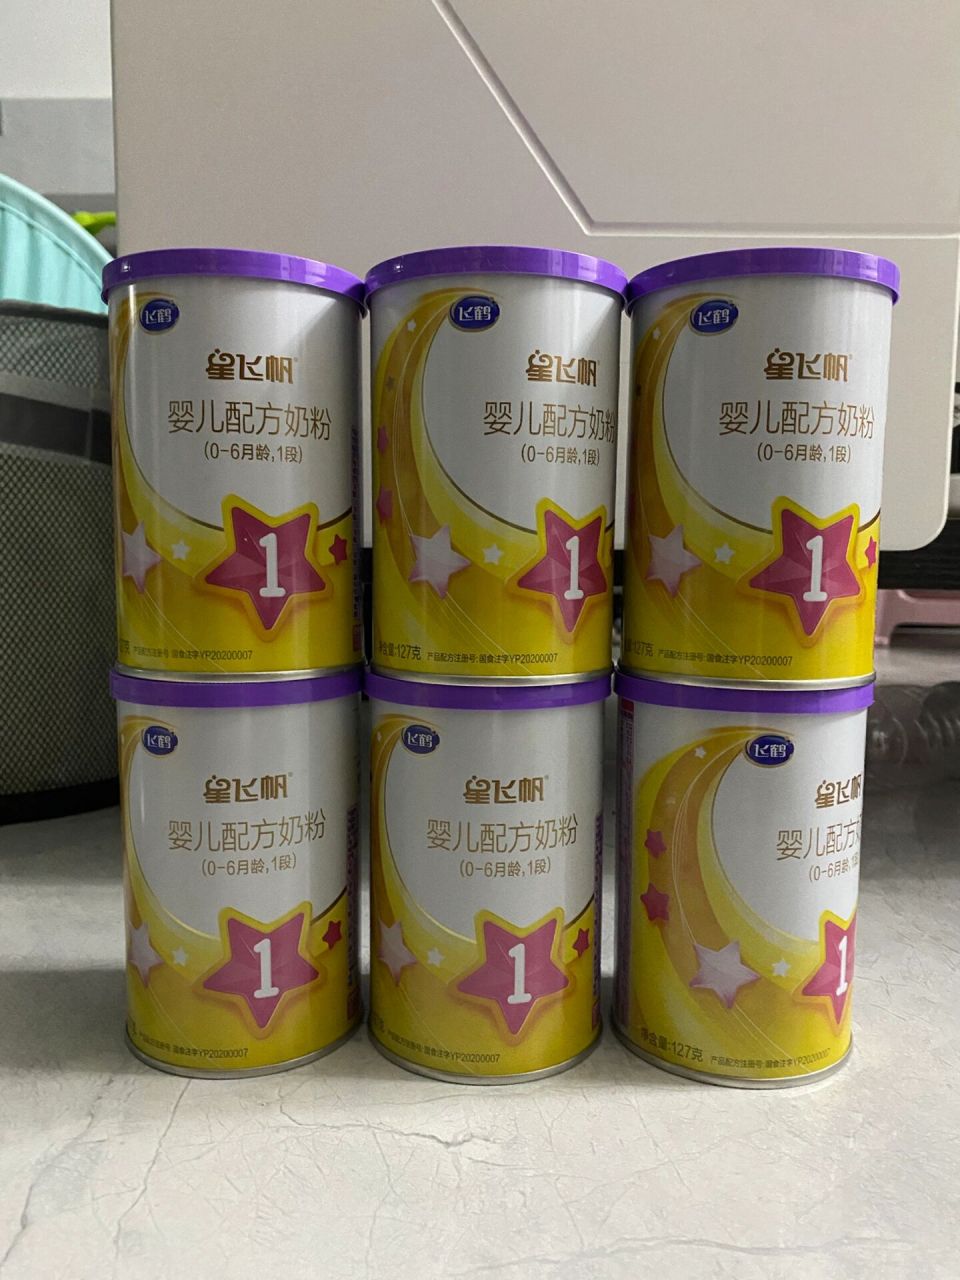 79紫盖飞鹤星飞帆有机a2 一段127g 母乳够了娃不吃奶粉了,有6罐